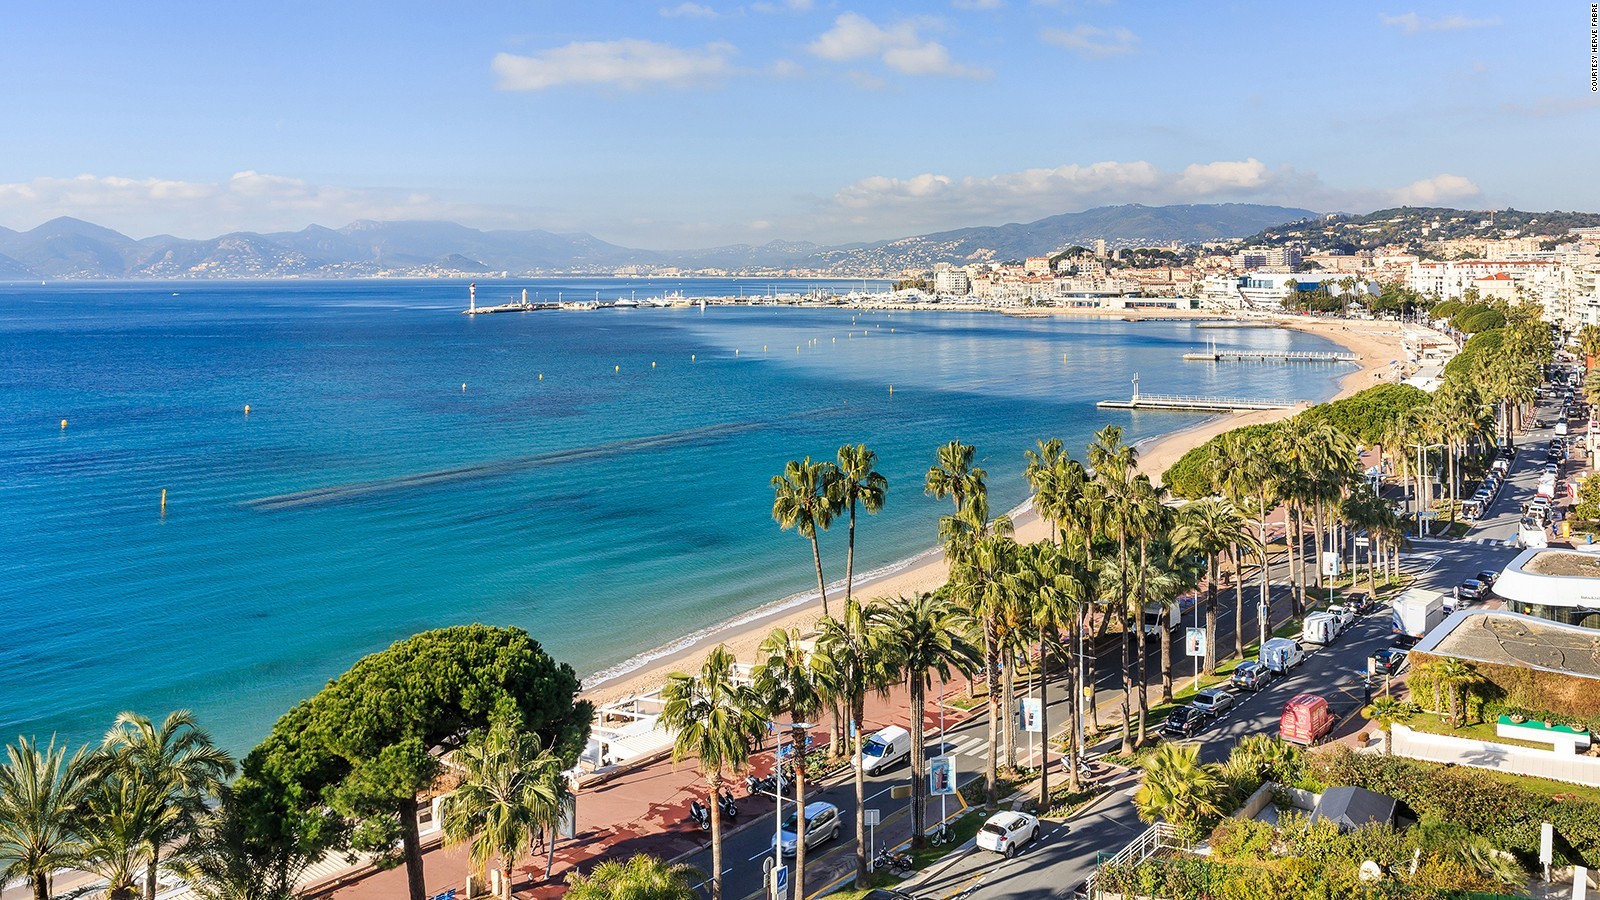 Trải nghiệm tại thành phố Cannes - Thiên đường nghỉ dưỡng của nước Pháp